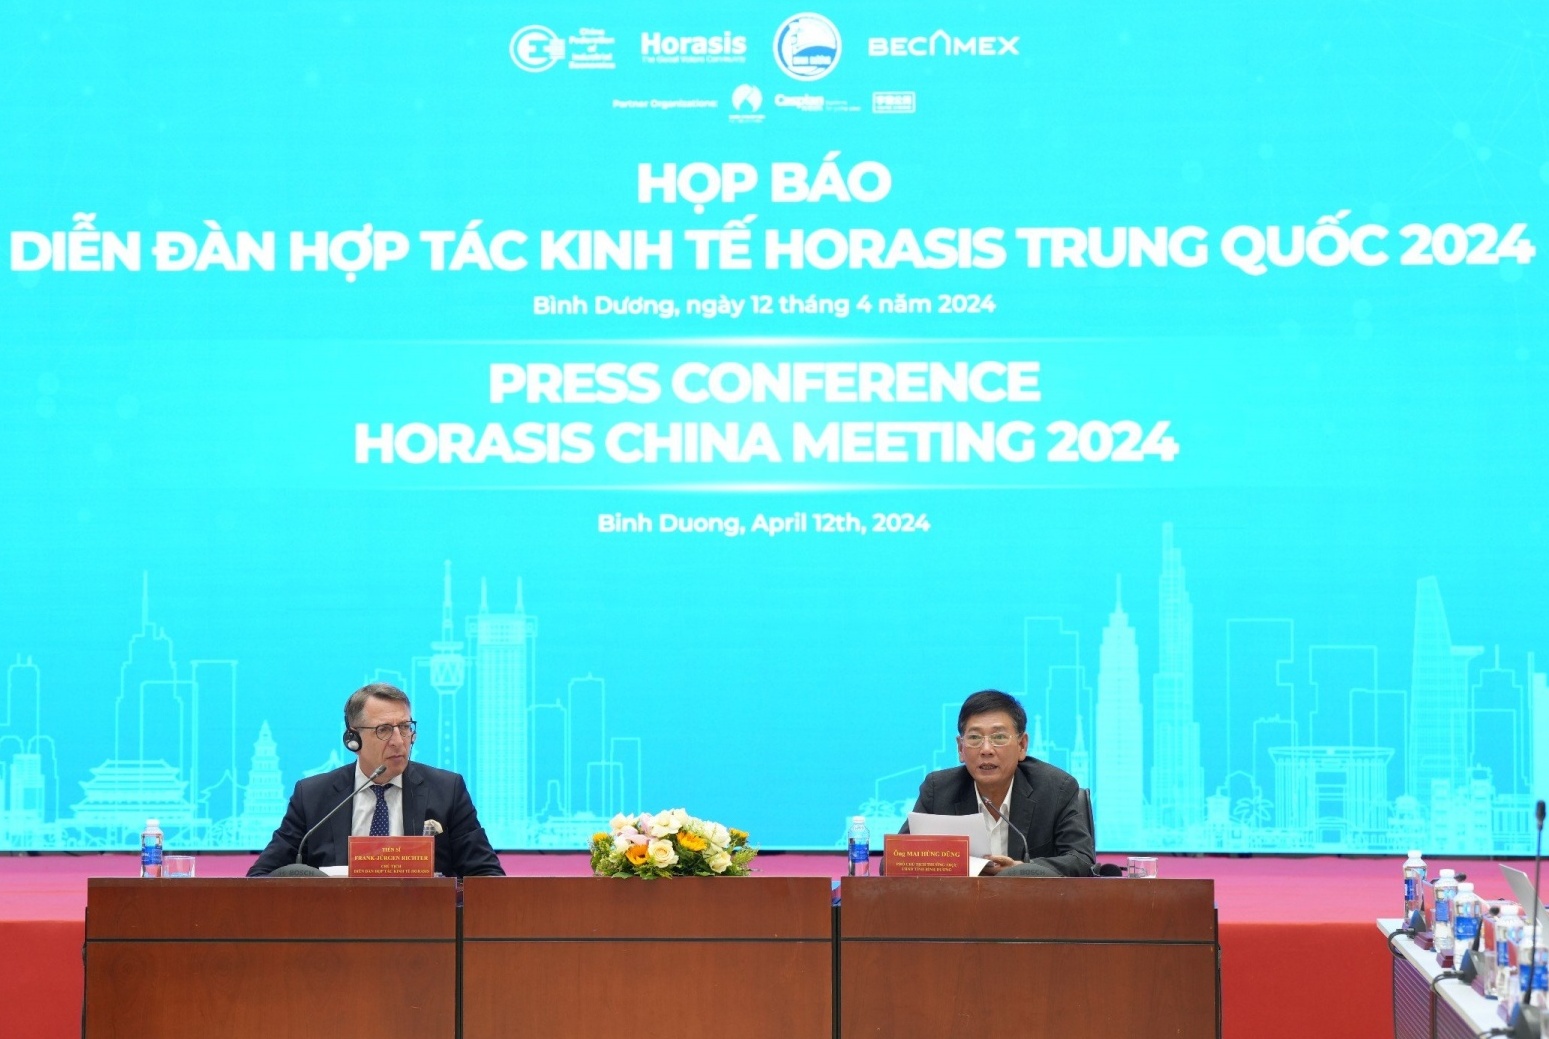 Bình Dương: Hơn 700 khách mời tham dự Diễn đàn hợp tác kinh tế Horasis Trung Quốc 2024